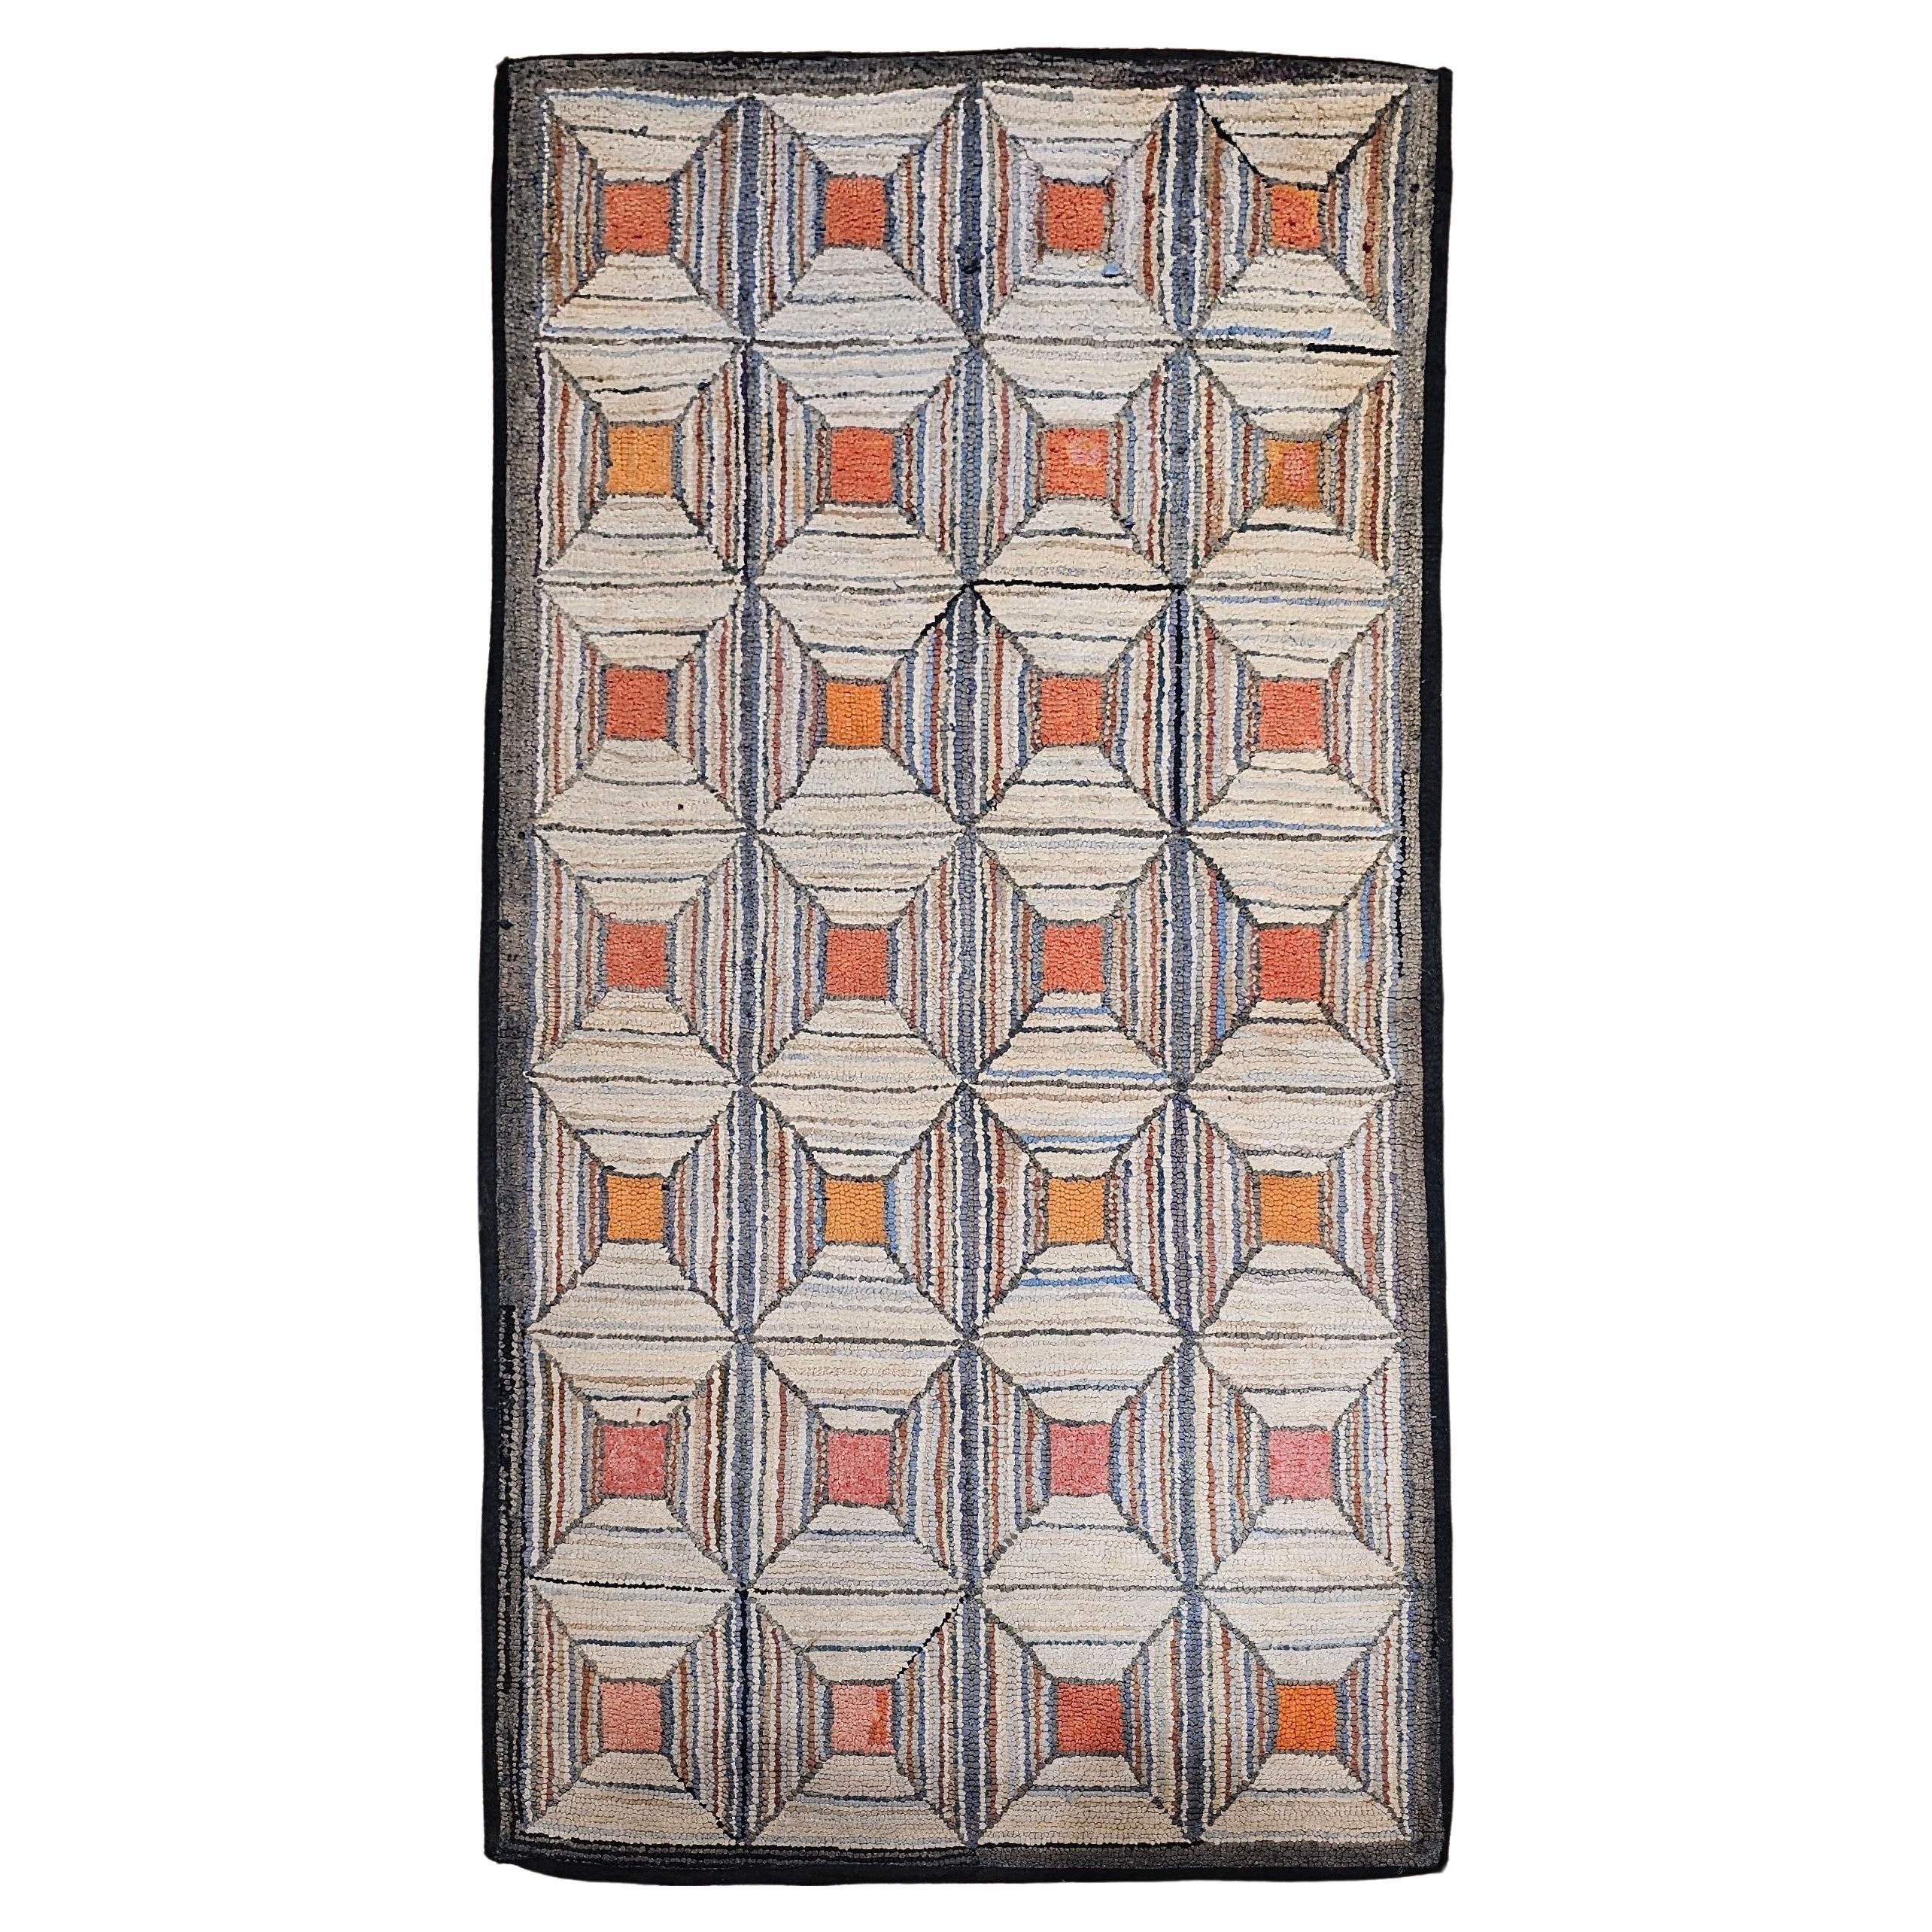 Tapis américain vintage crocheté à la main à motif géométrique en ivoire, rose, orange, brun clair